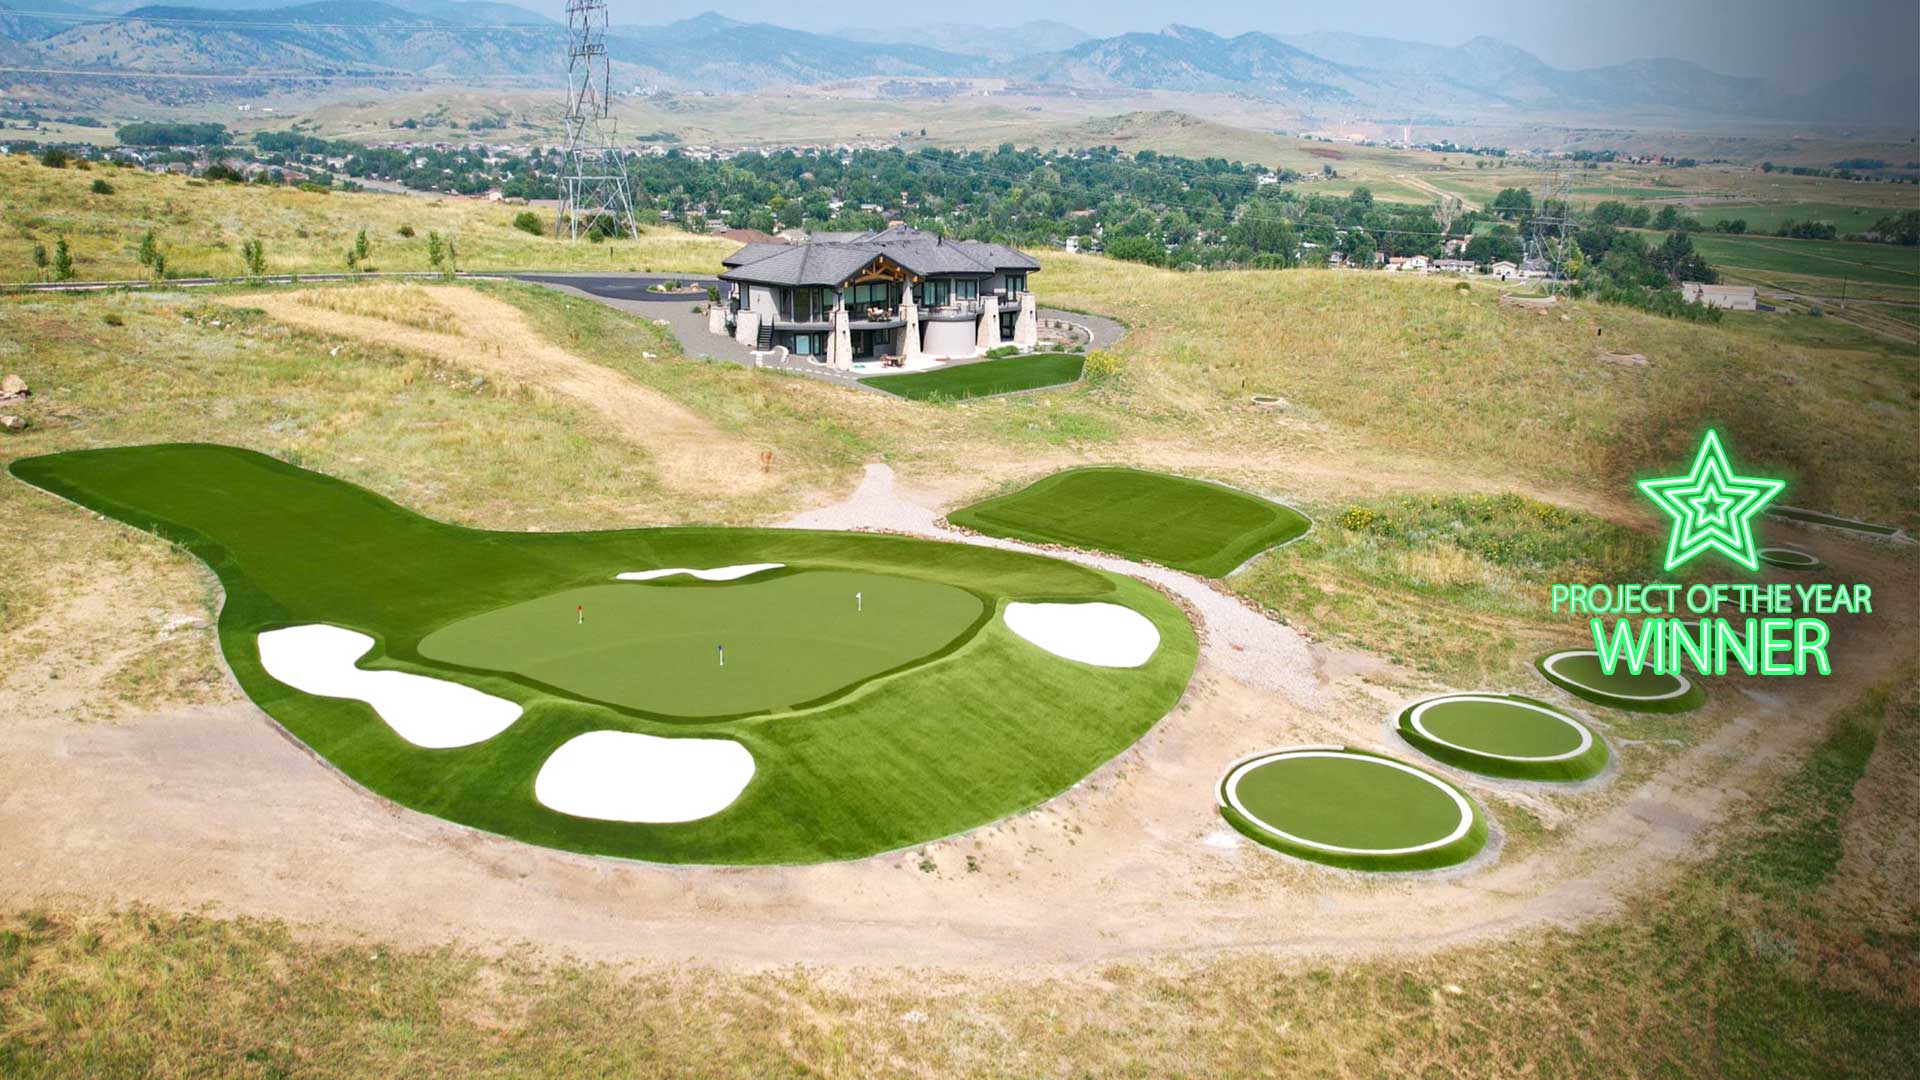 Colorado Residential Golf Course Receives Award Recognition